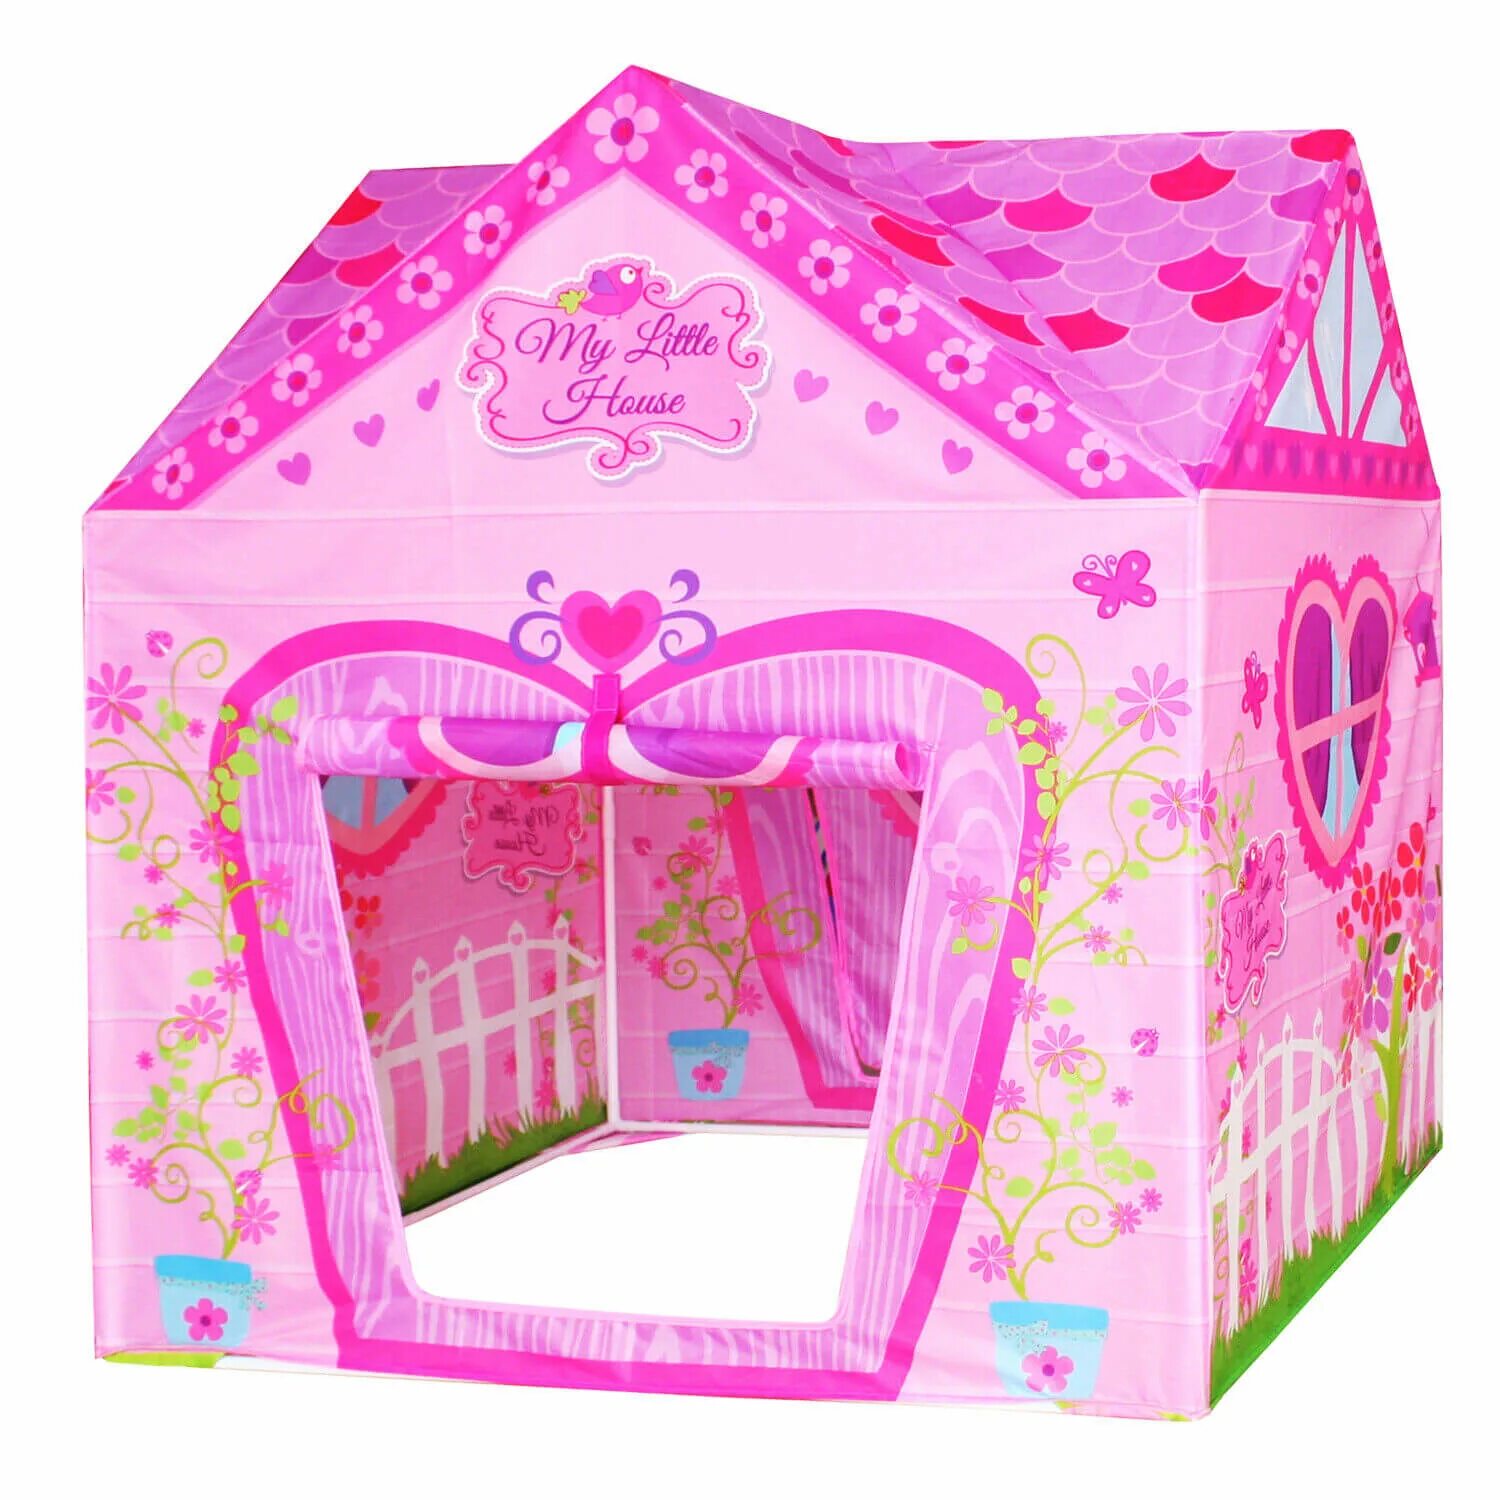 Палатка игровой домик "дом my little House. Палатка ELC игровой домик принцессы. Палатка Yako замок принцессы m7128. Игровой домик-палатка "замок для принцессы", 102 см схема. My little house